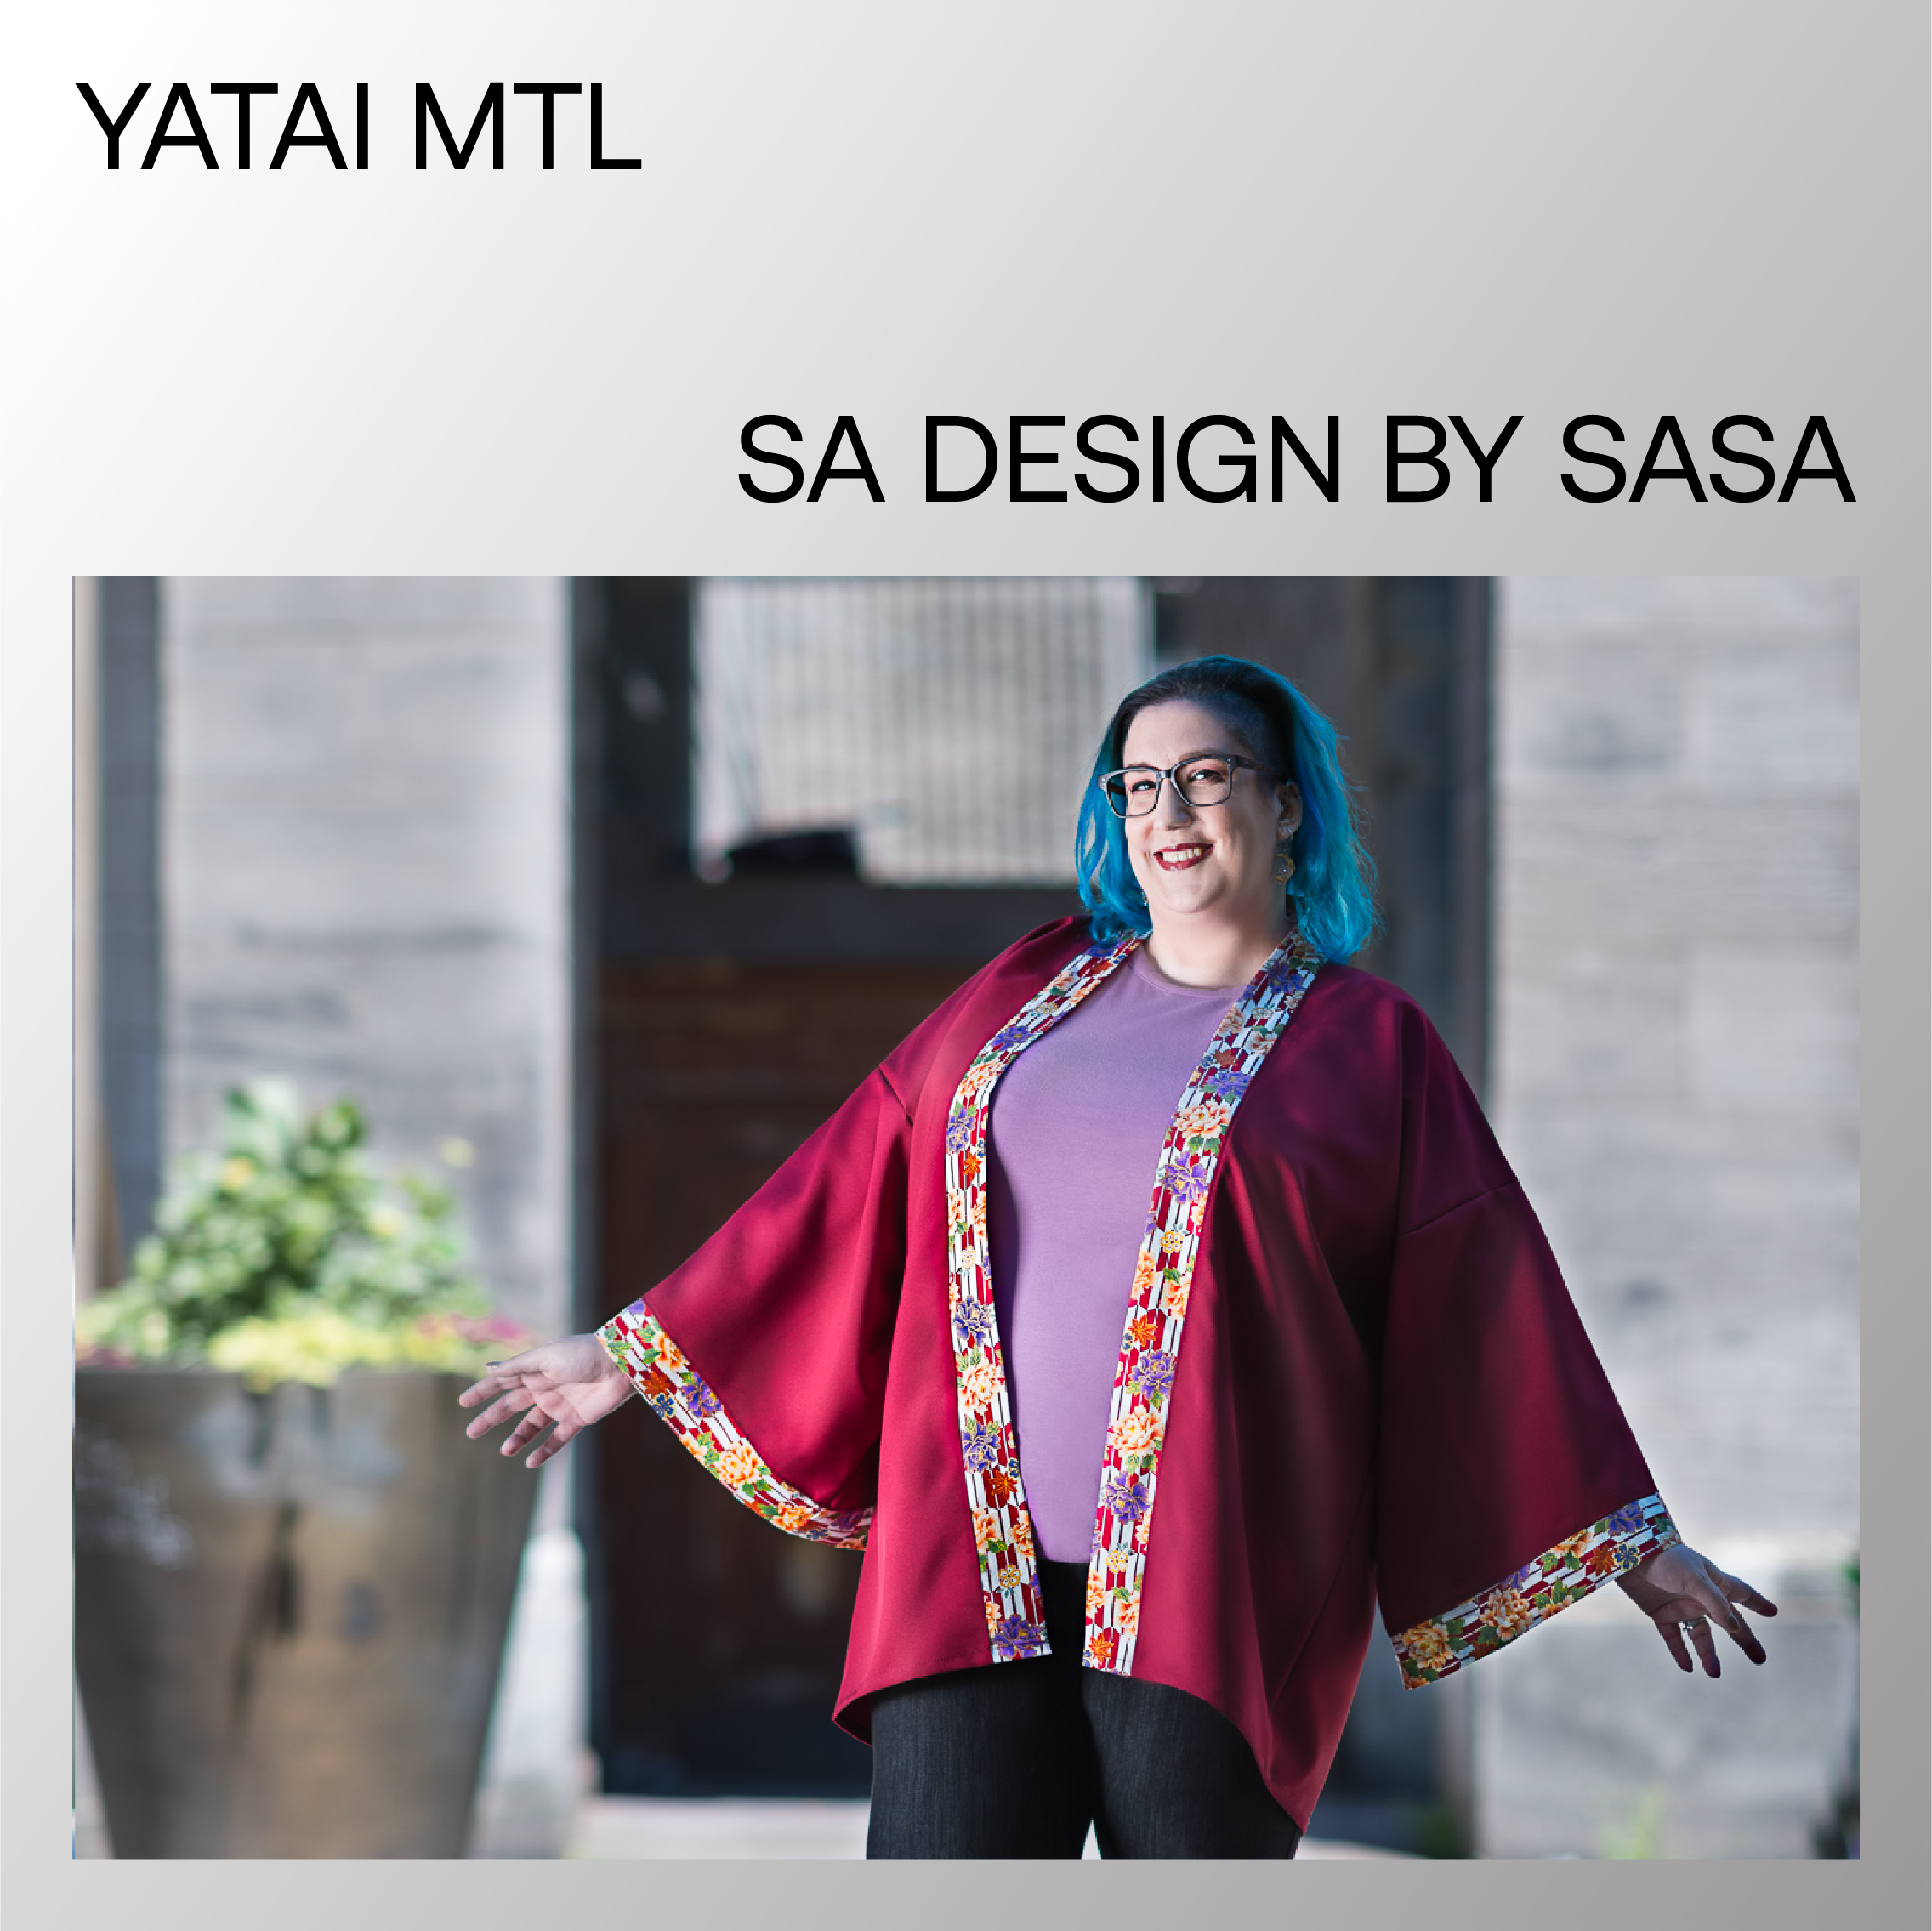 SA Design by SASA